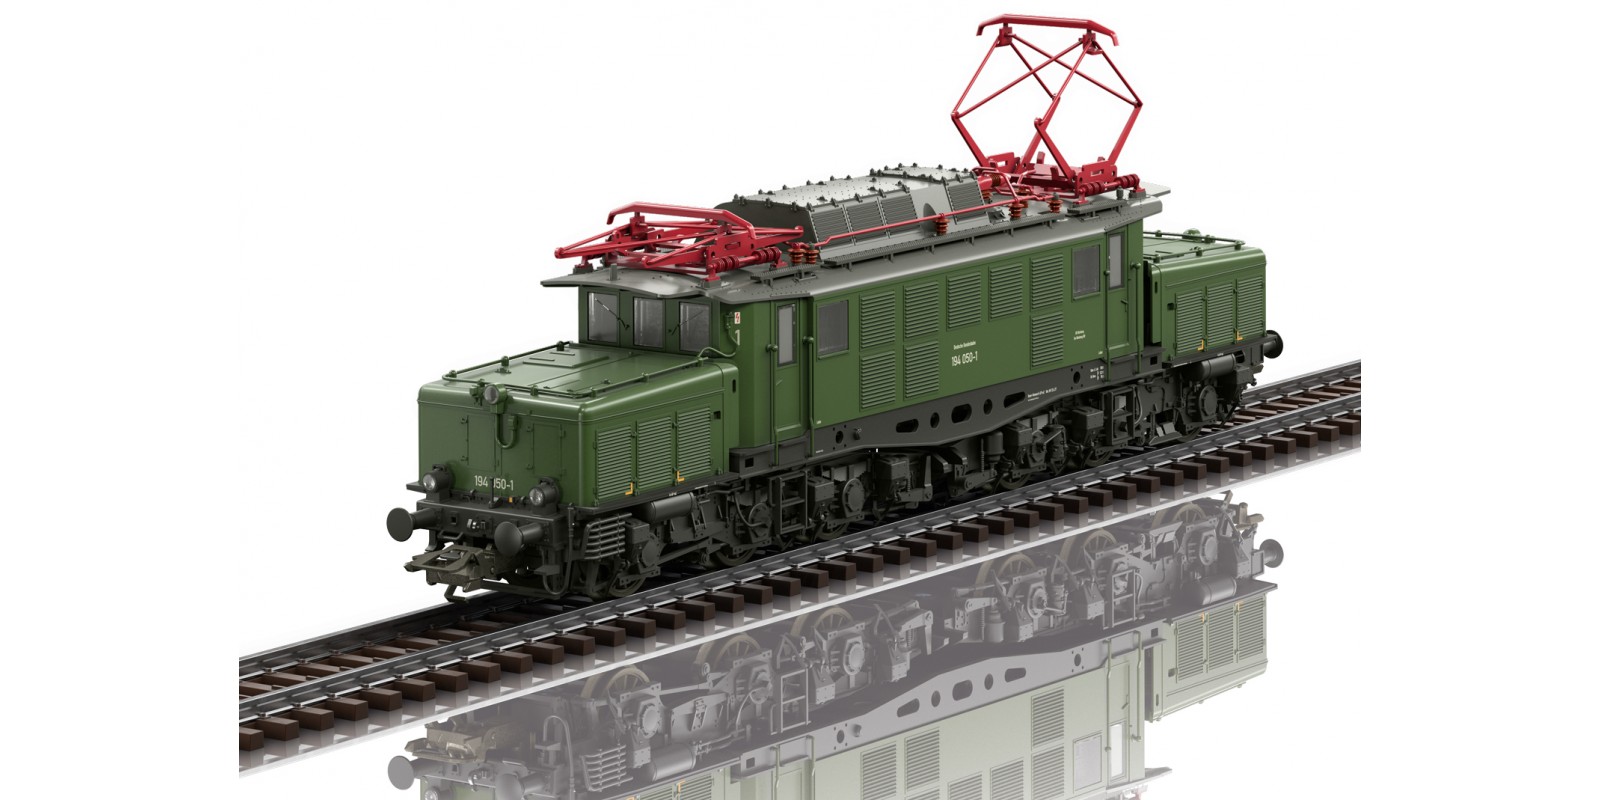 39990 Class 194 Electric Locomotive